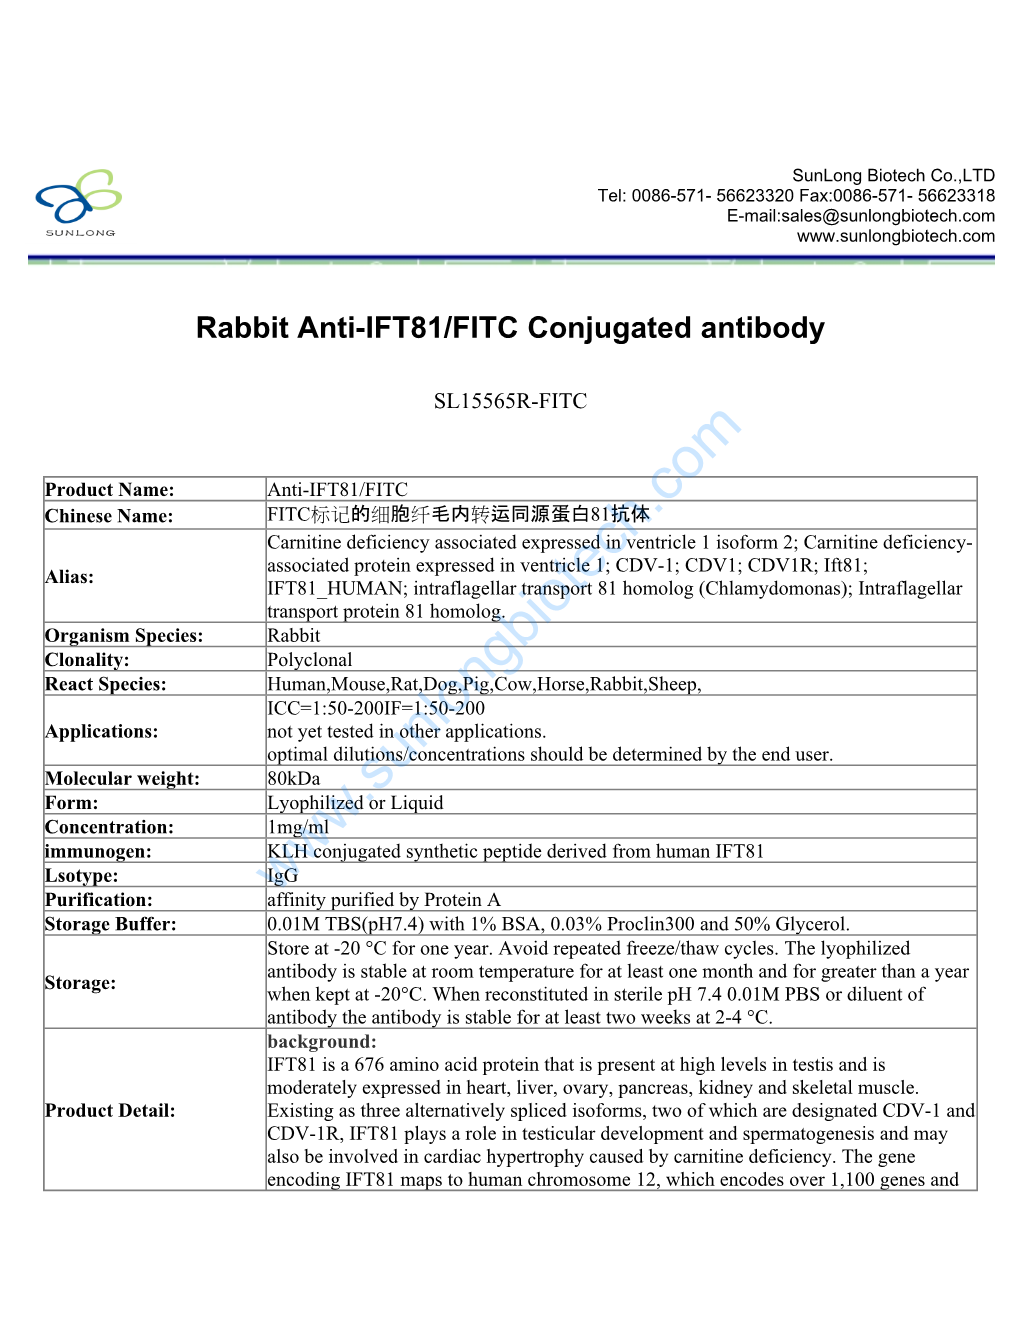 Rabbit Anti-IFT81/FITC Conjugated Antibody